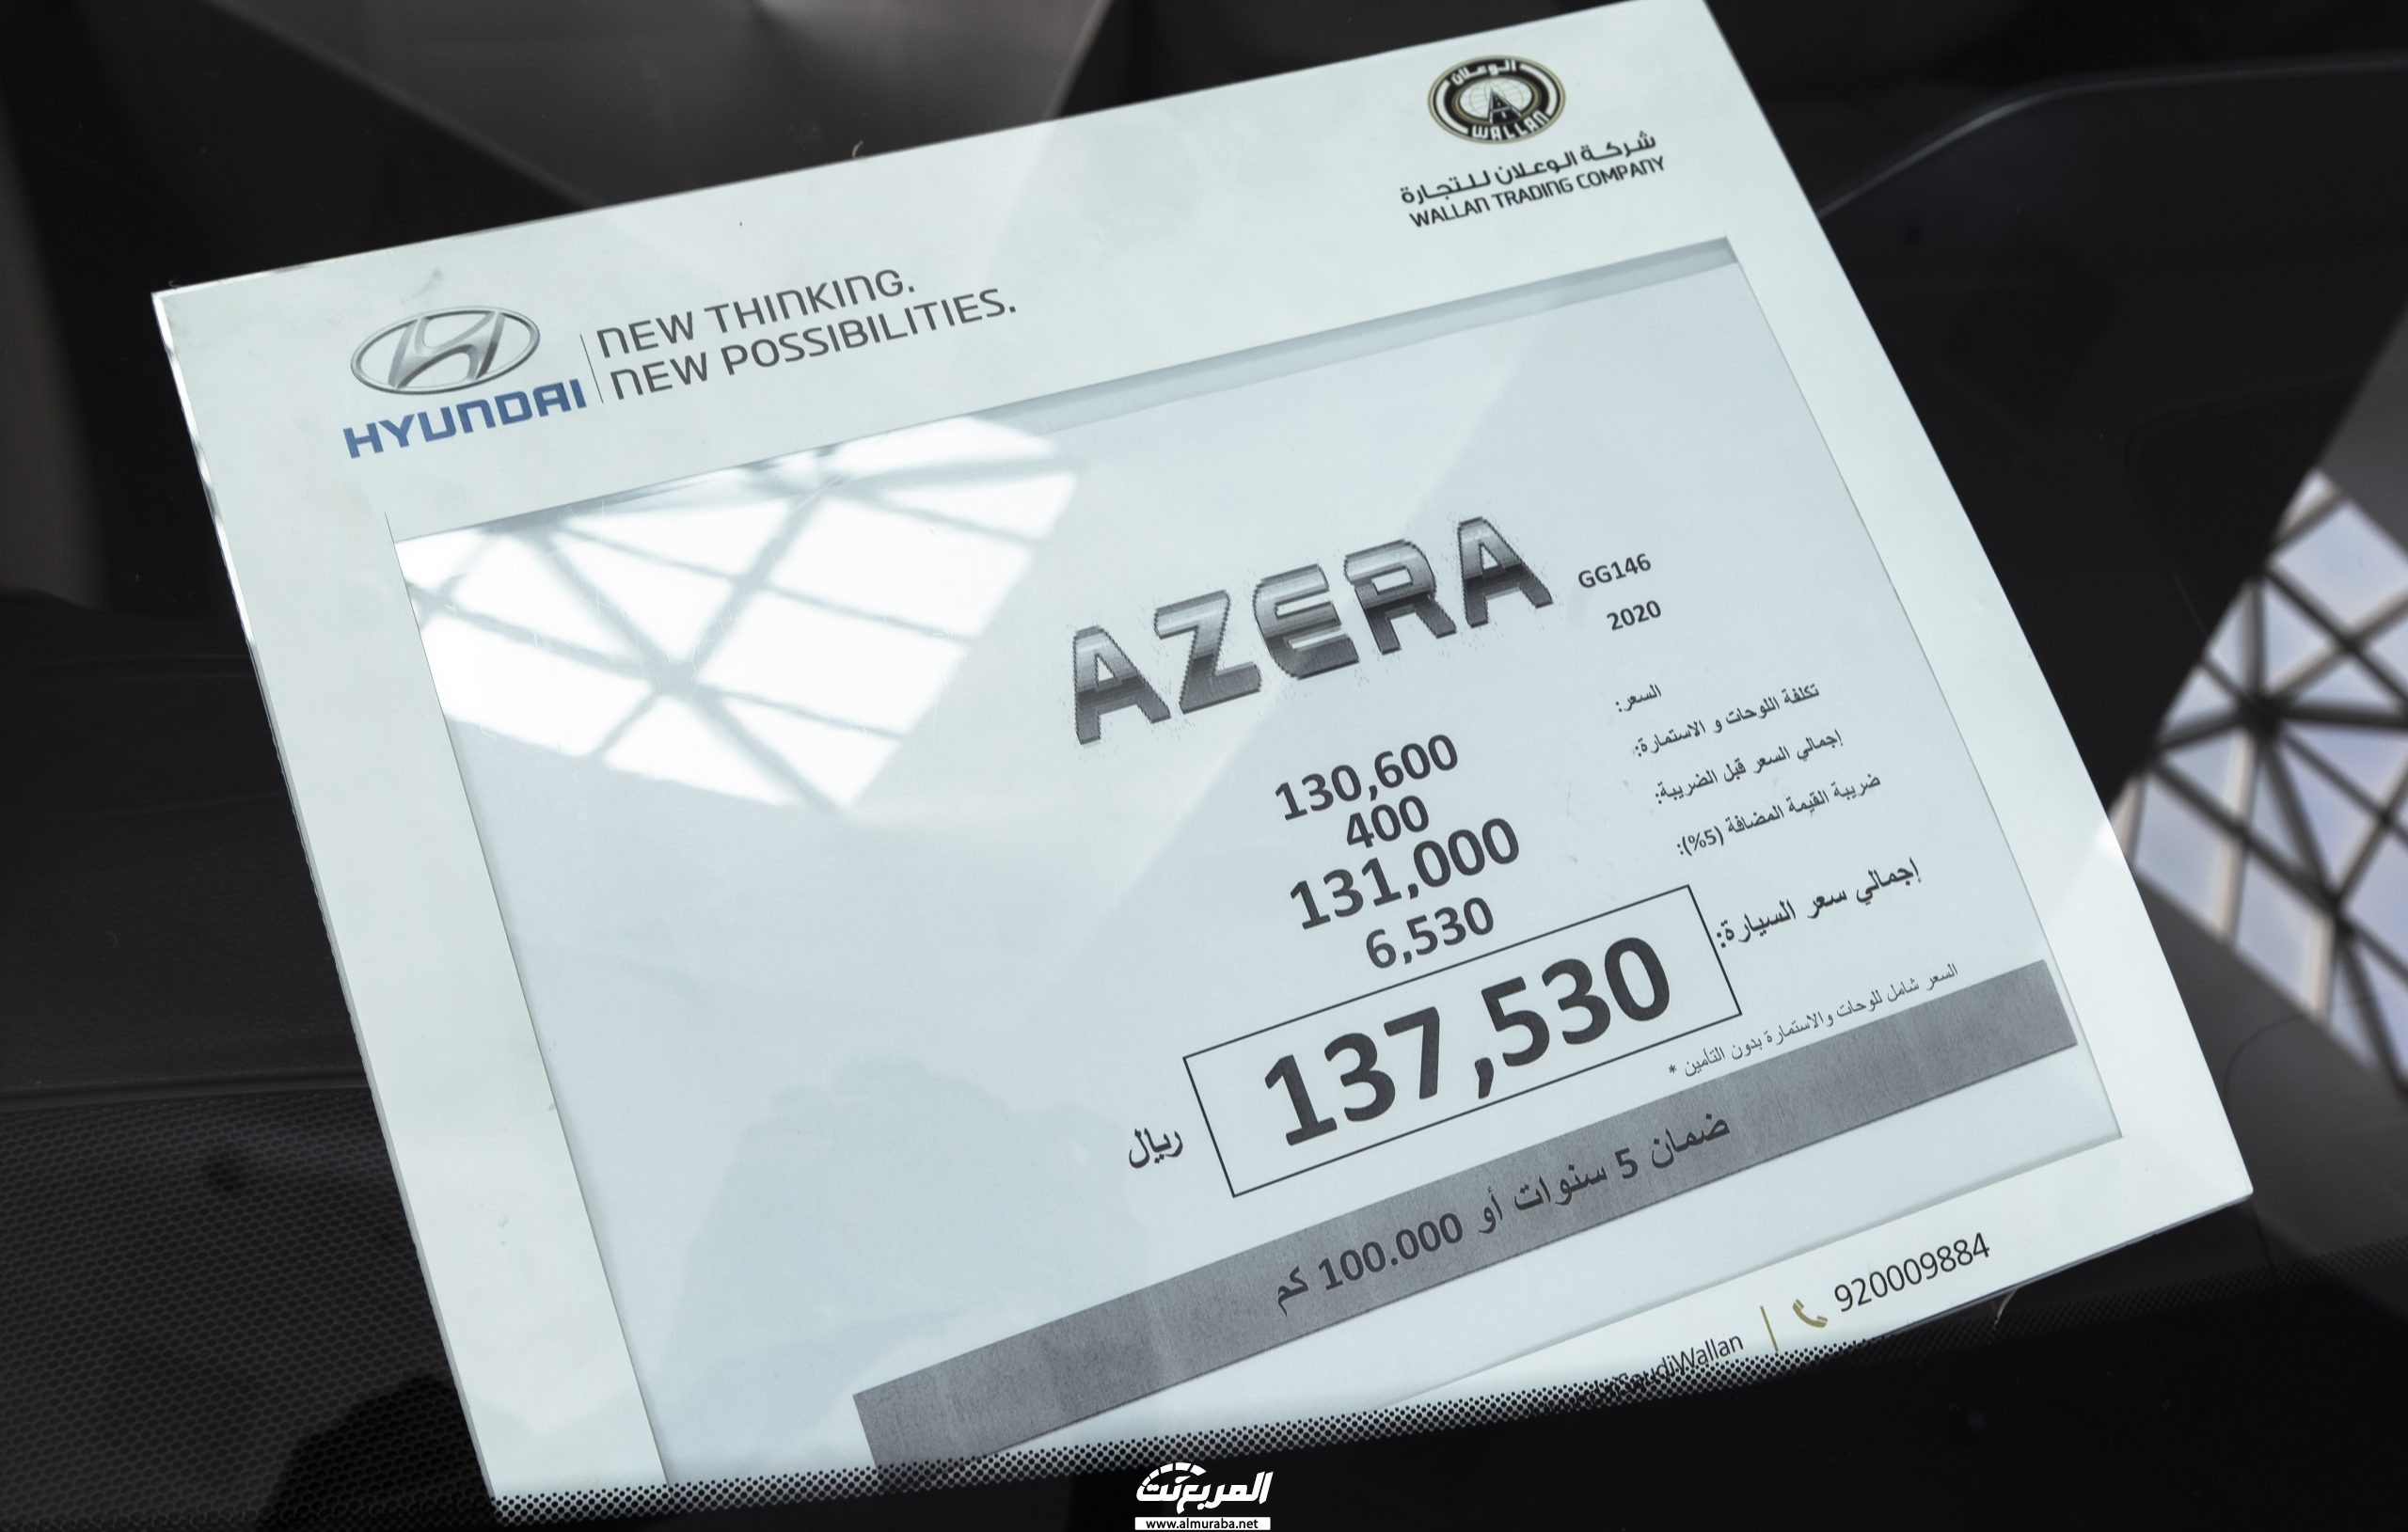 مواصفات هيونداي ازيرا 2020 في السعودية Hyundai Azera 25